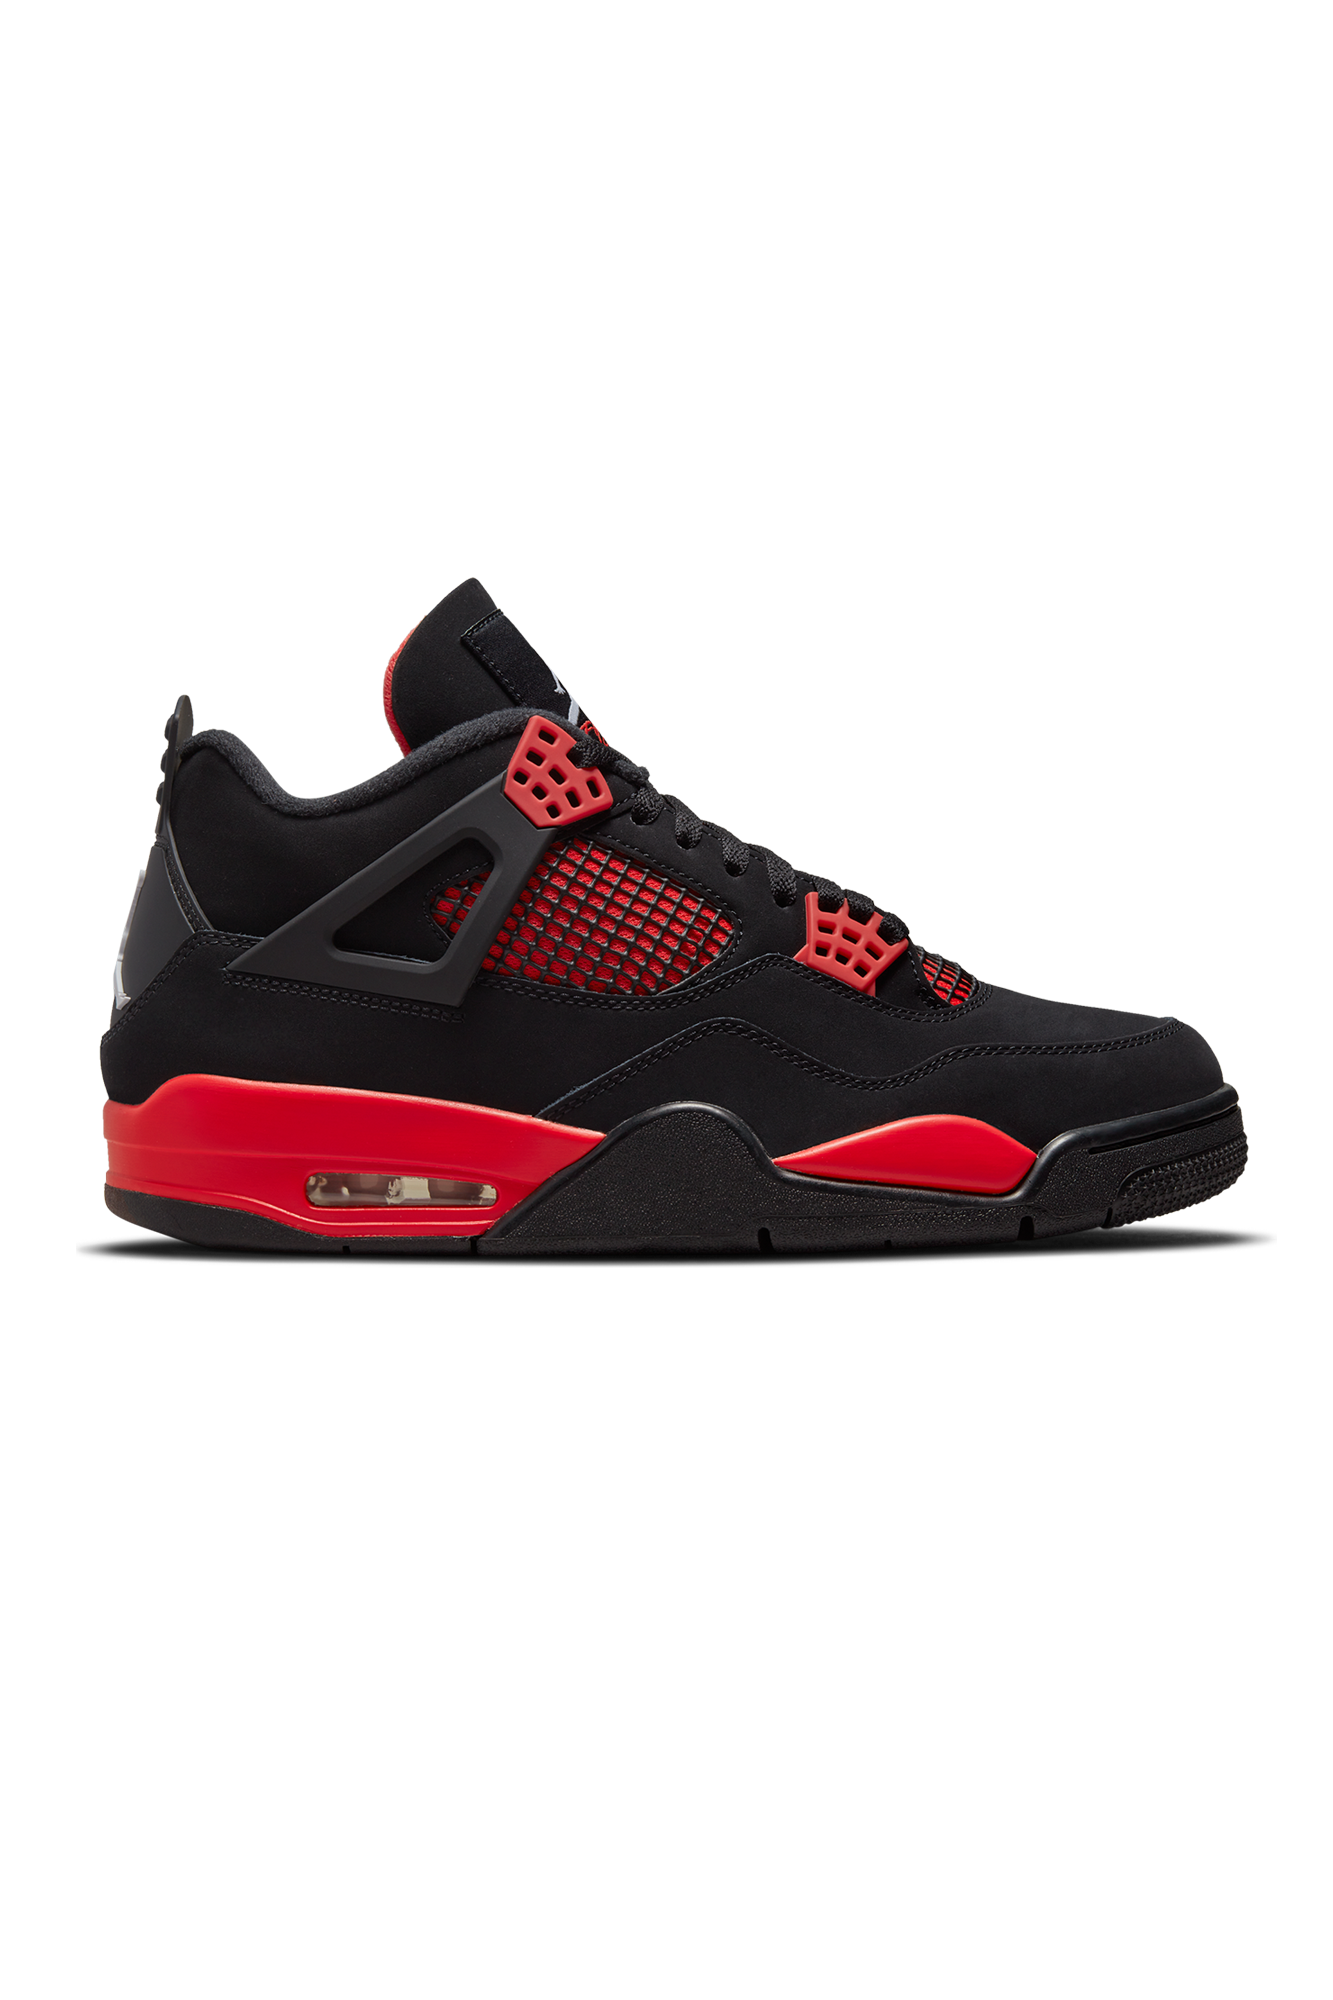 נעלי נייק אייר ג'ורדן | Jordan 4 Retro Red Thunder